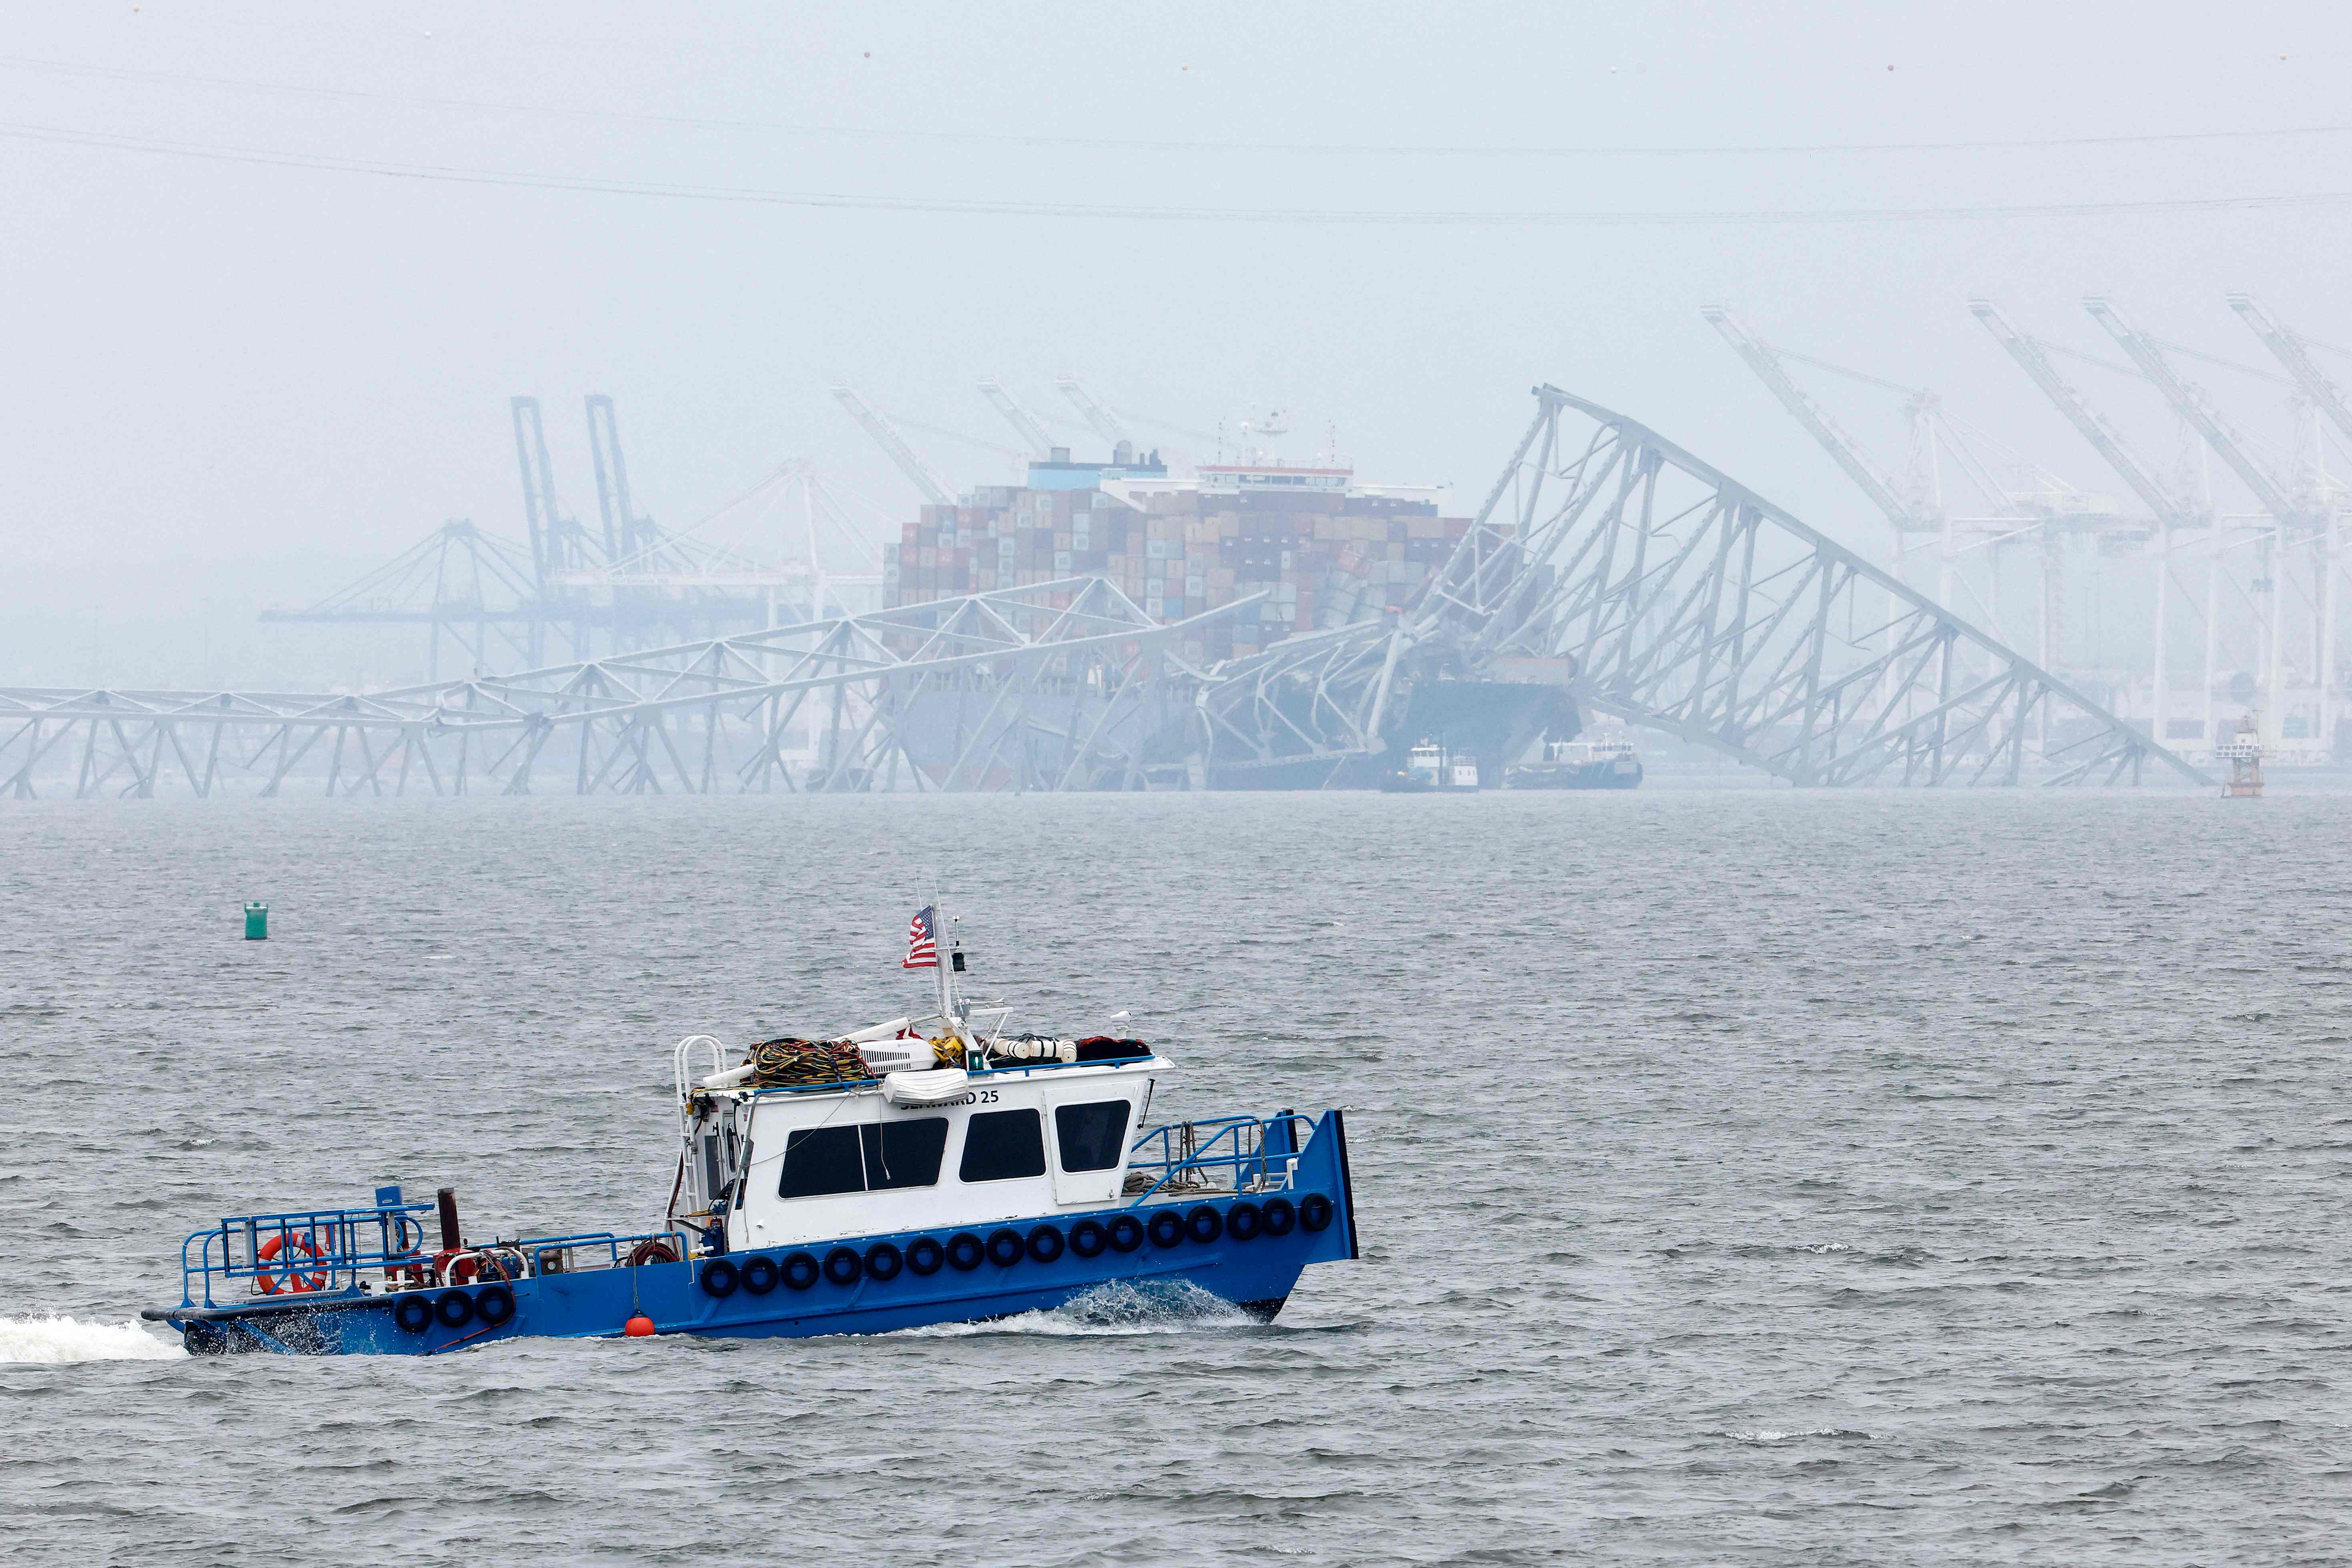 El carguero Dali descansa bajo los restos retorcidos del puente Francis Scott Key, destruido cuando el buque colisionó con él a principios de esta semana. (Foto Prensa Libre: AFP)